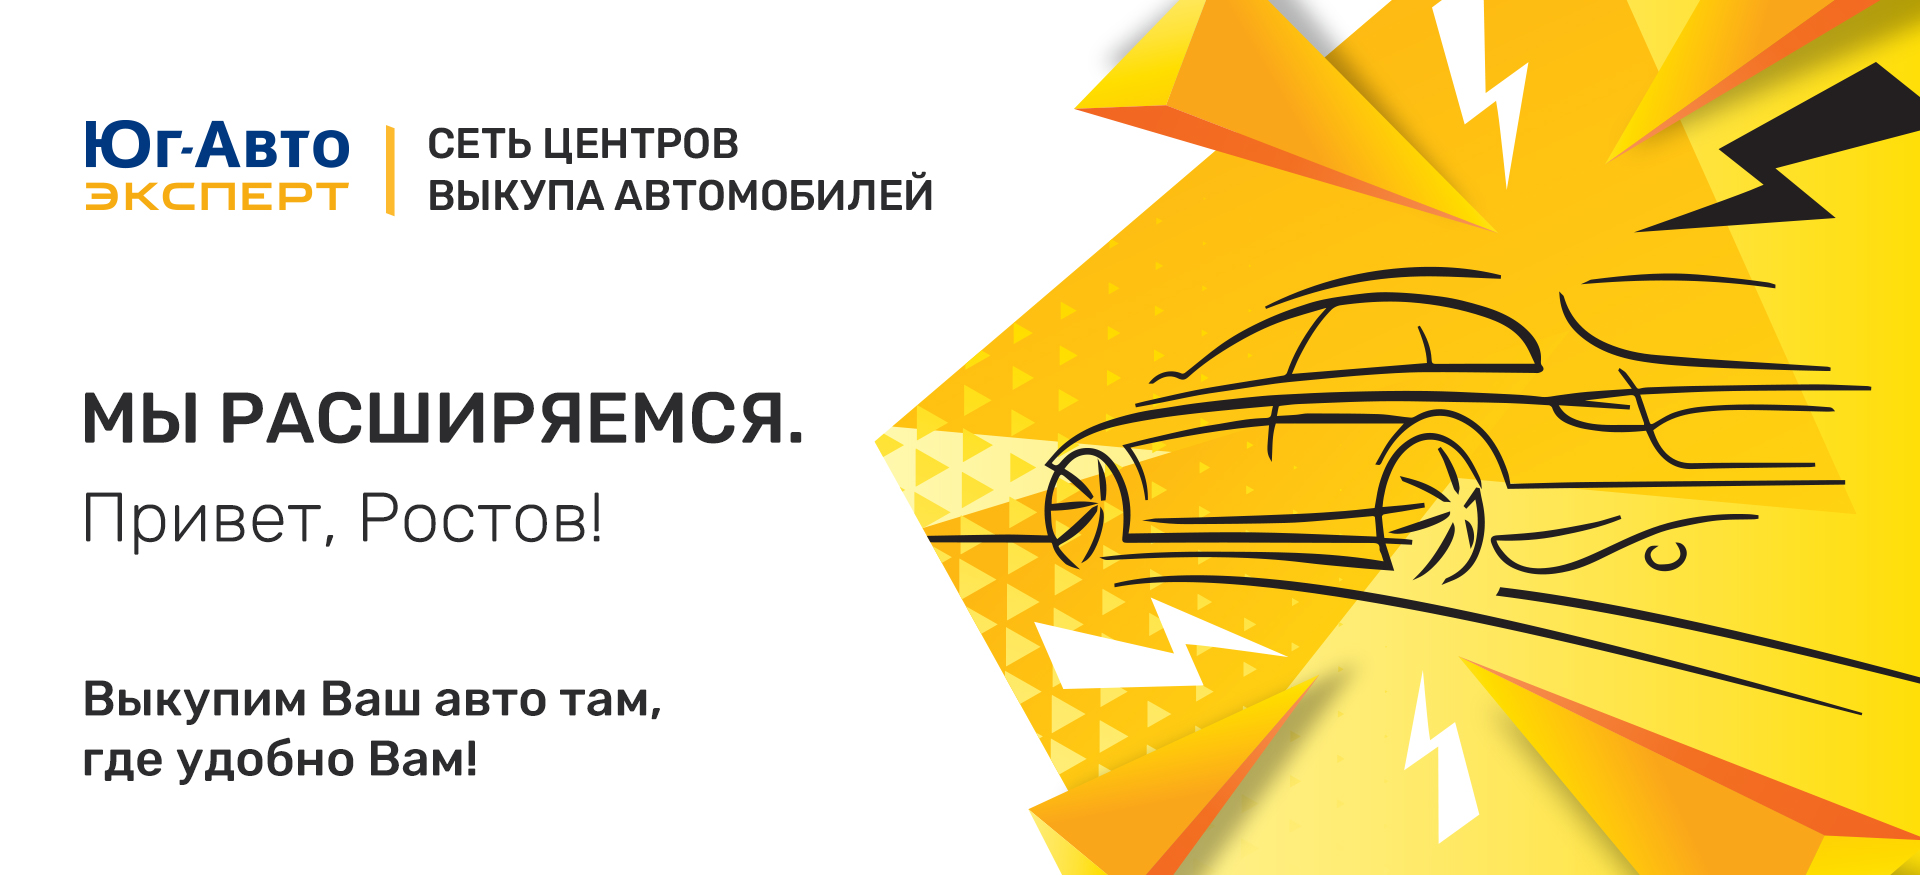 Выездной выкуп автомобилей Юг-Авто эксперт теперь и в Ростове-на-Дону!